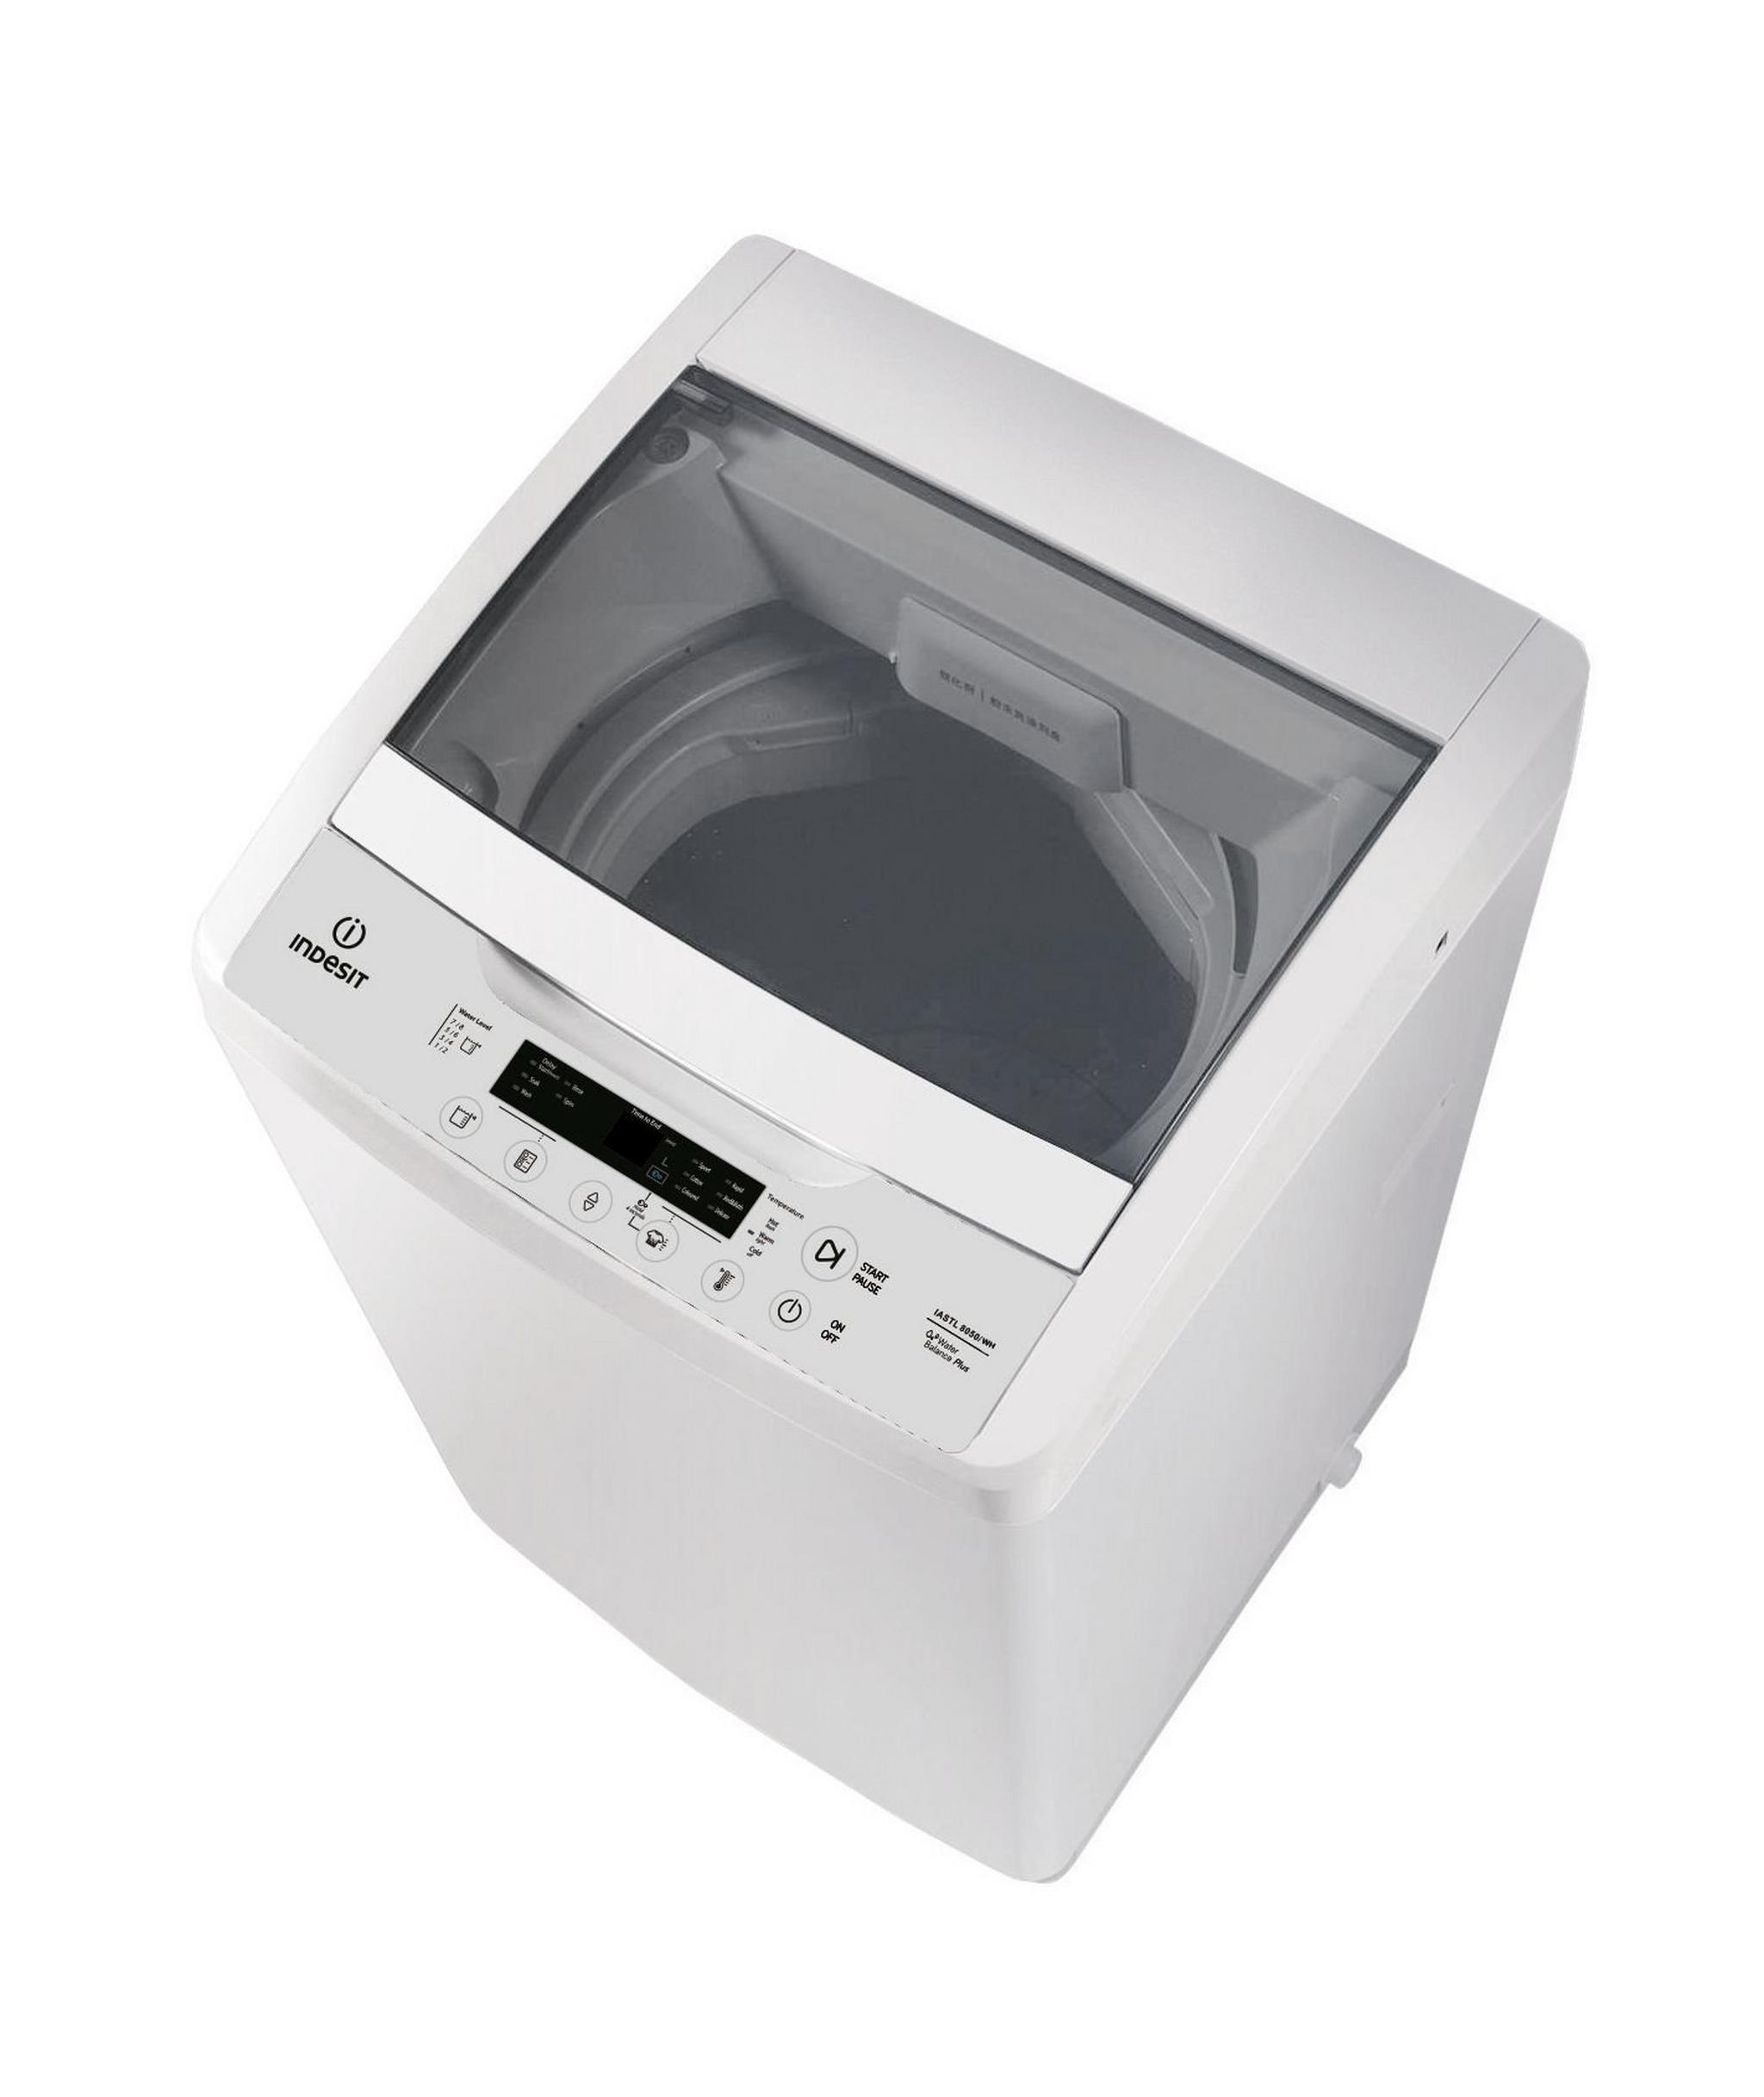 Indesit 8KG Top Load Washing Machine (IASTL 8050) - White